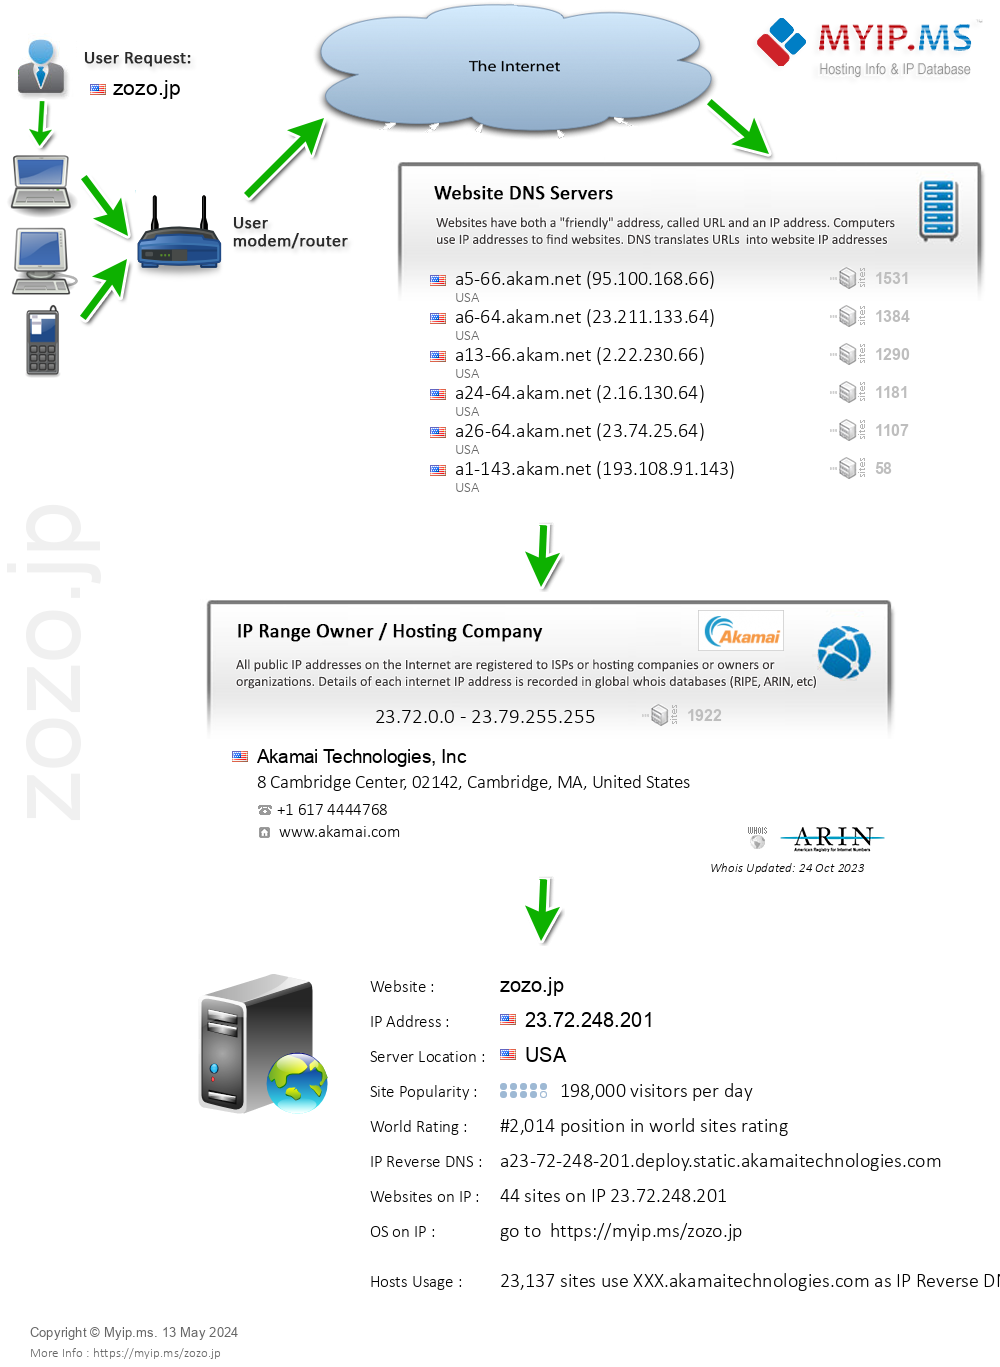 Zozo.jp - Website Hosting Visual IP Diagram